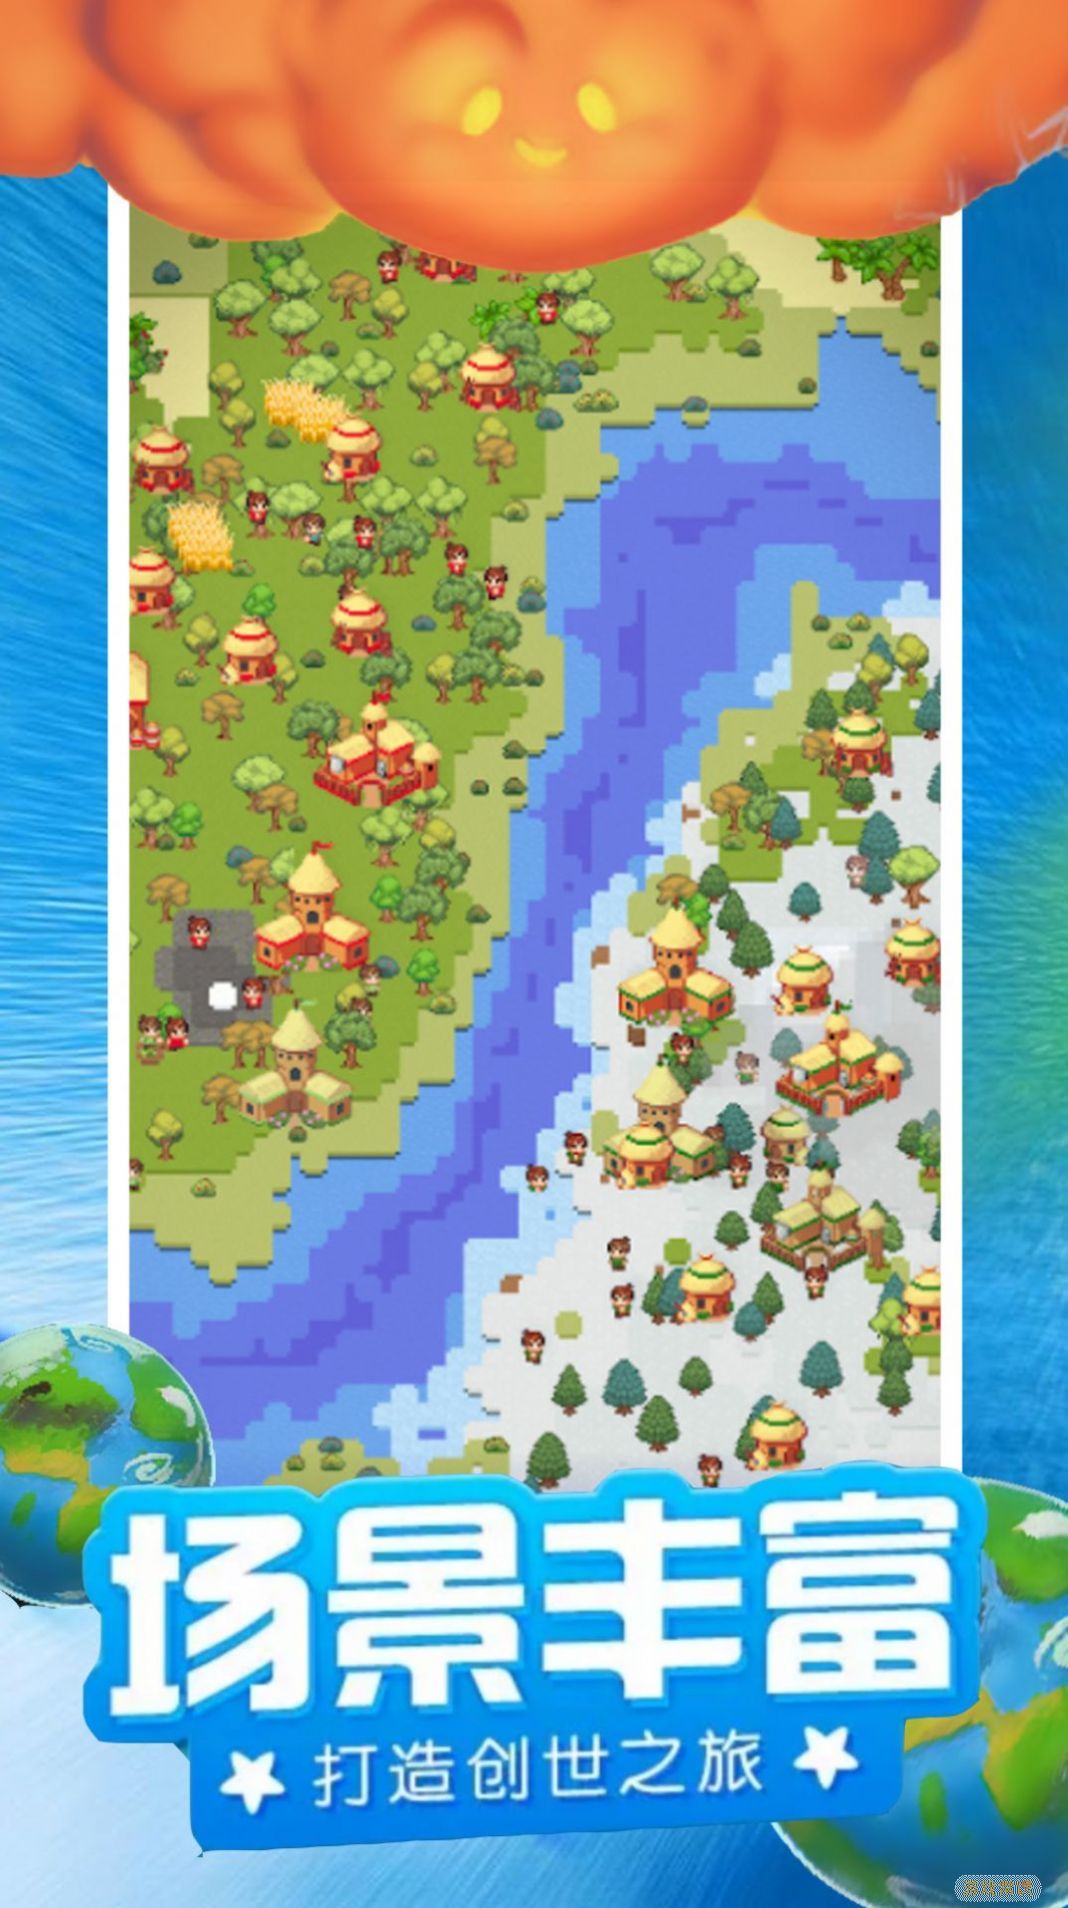 模拟像素城堡世界游戏官方版图片1